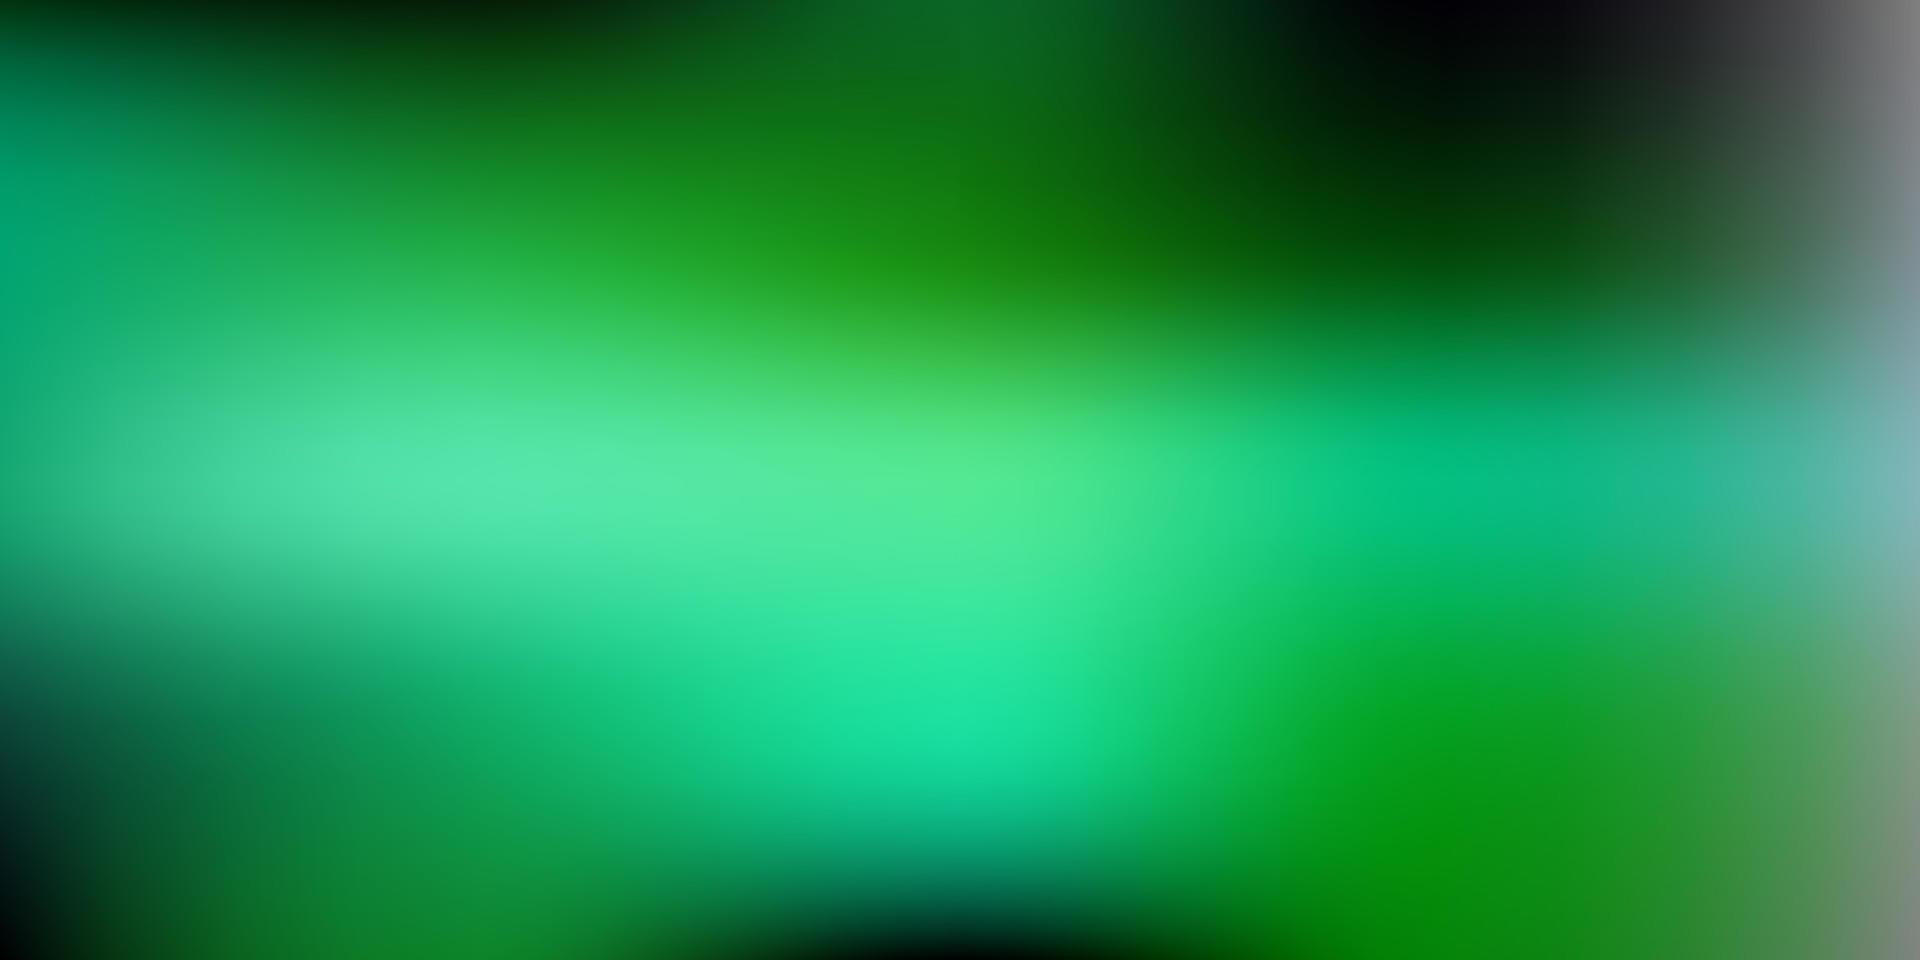 ljusblå, grön vektor oskärpa bakgrund.